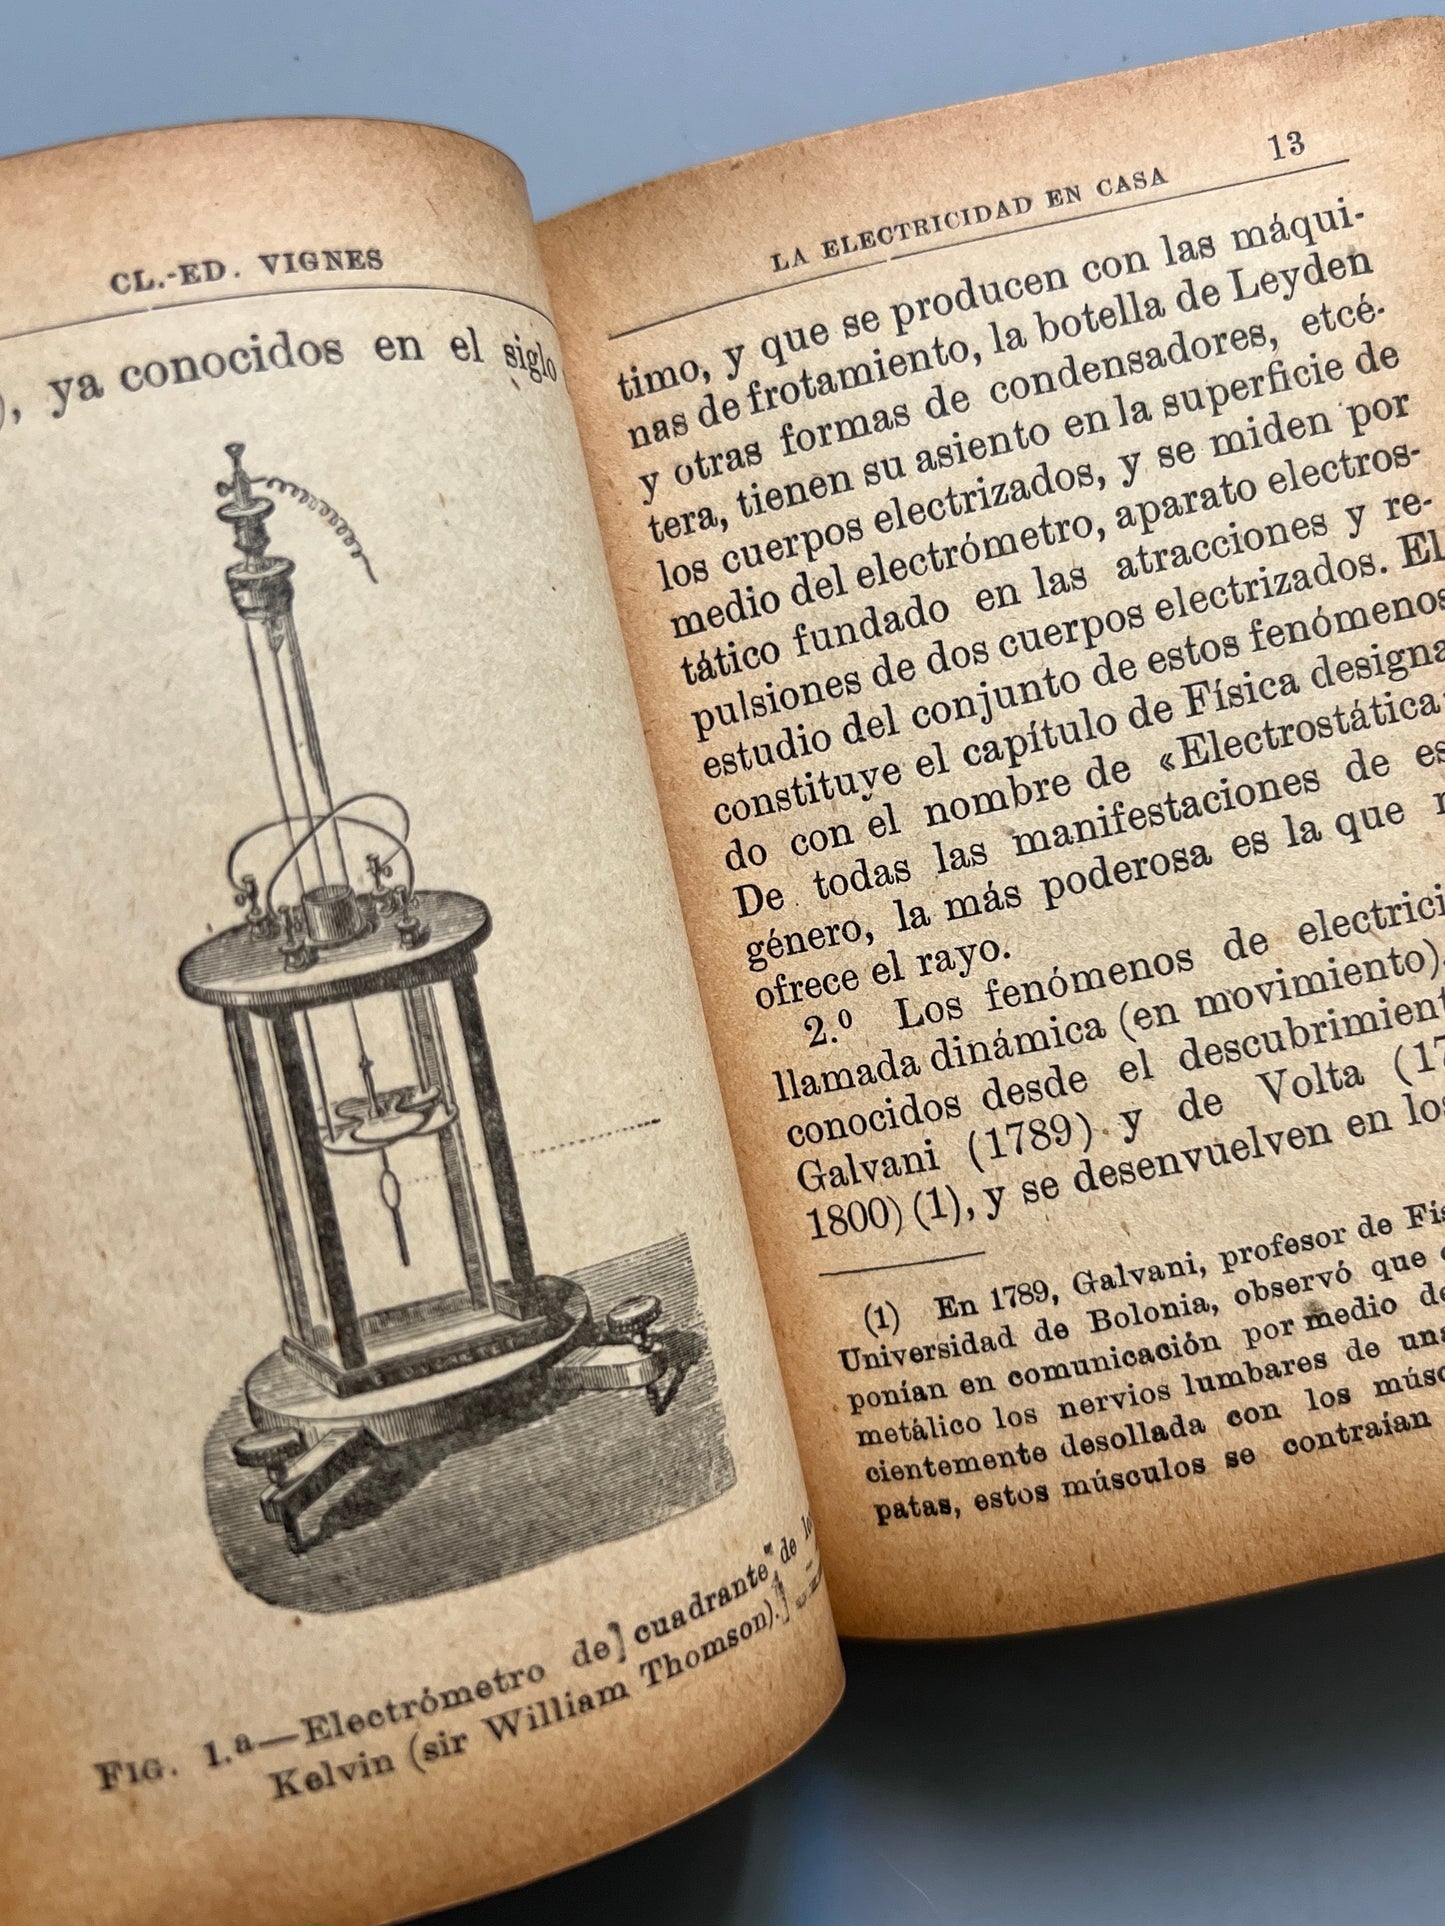 La electricidad en casa, Cl.-Ed. Vignes - Saturnino Calleja Editor, ca. 1900